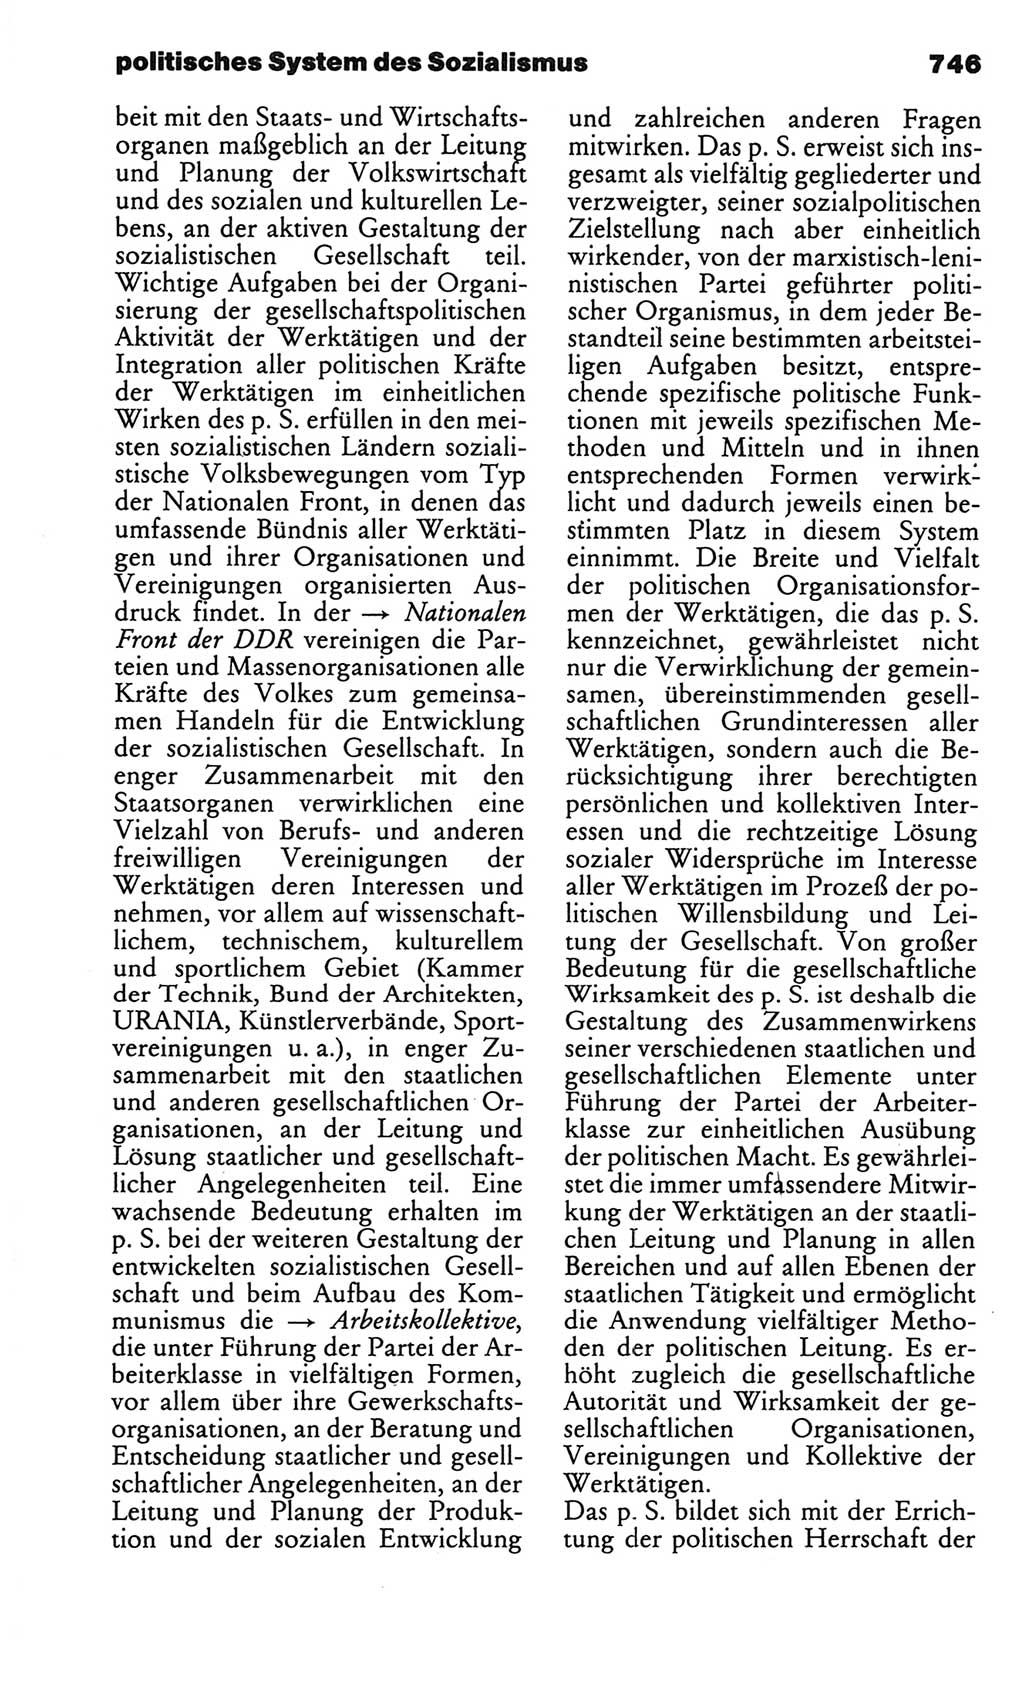 Kleines politisches Wörterbuch [Deutsche Demokratische Republik (DDR)] 1986, Seite 746 (Kl. pol. Wb. DDR 1986, S. 746)